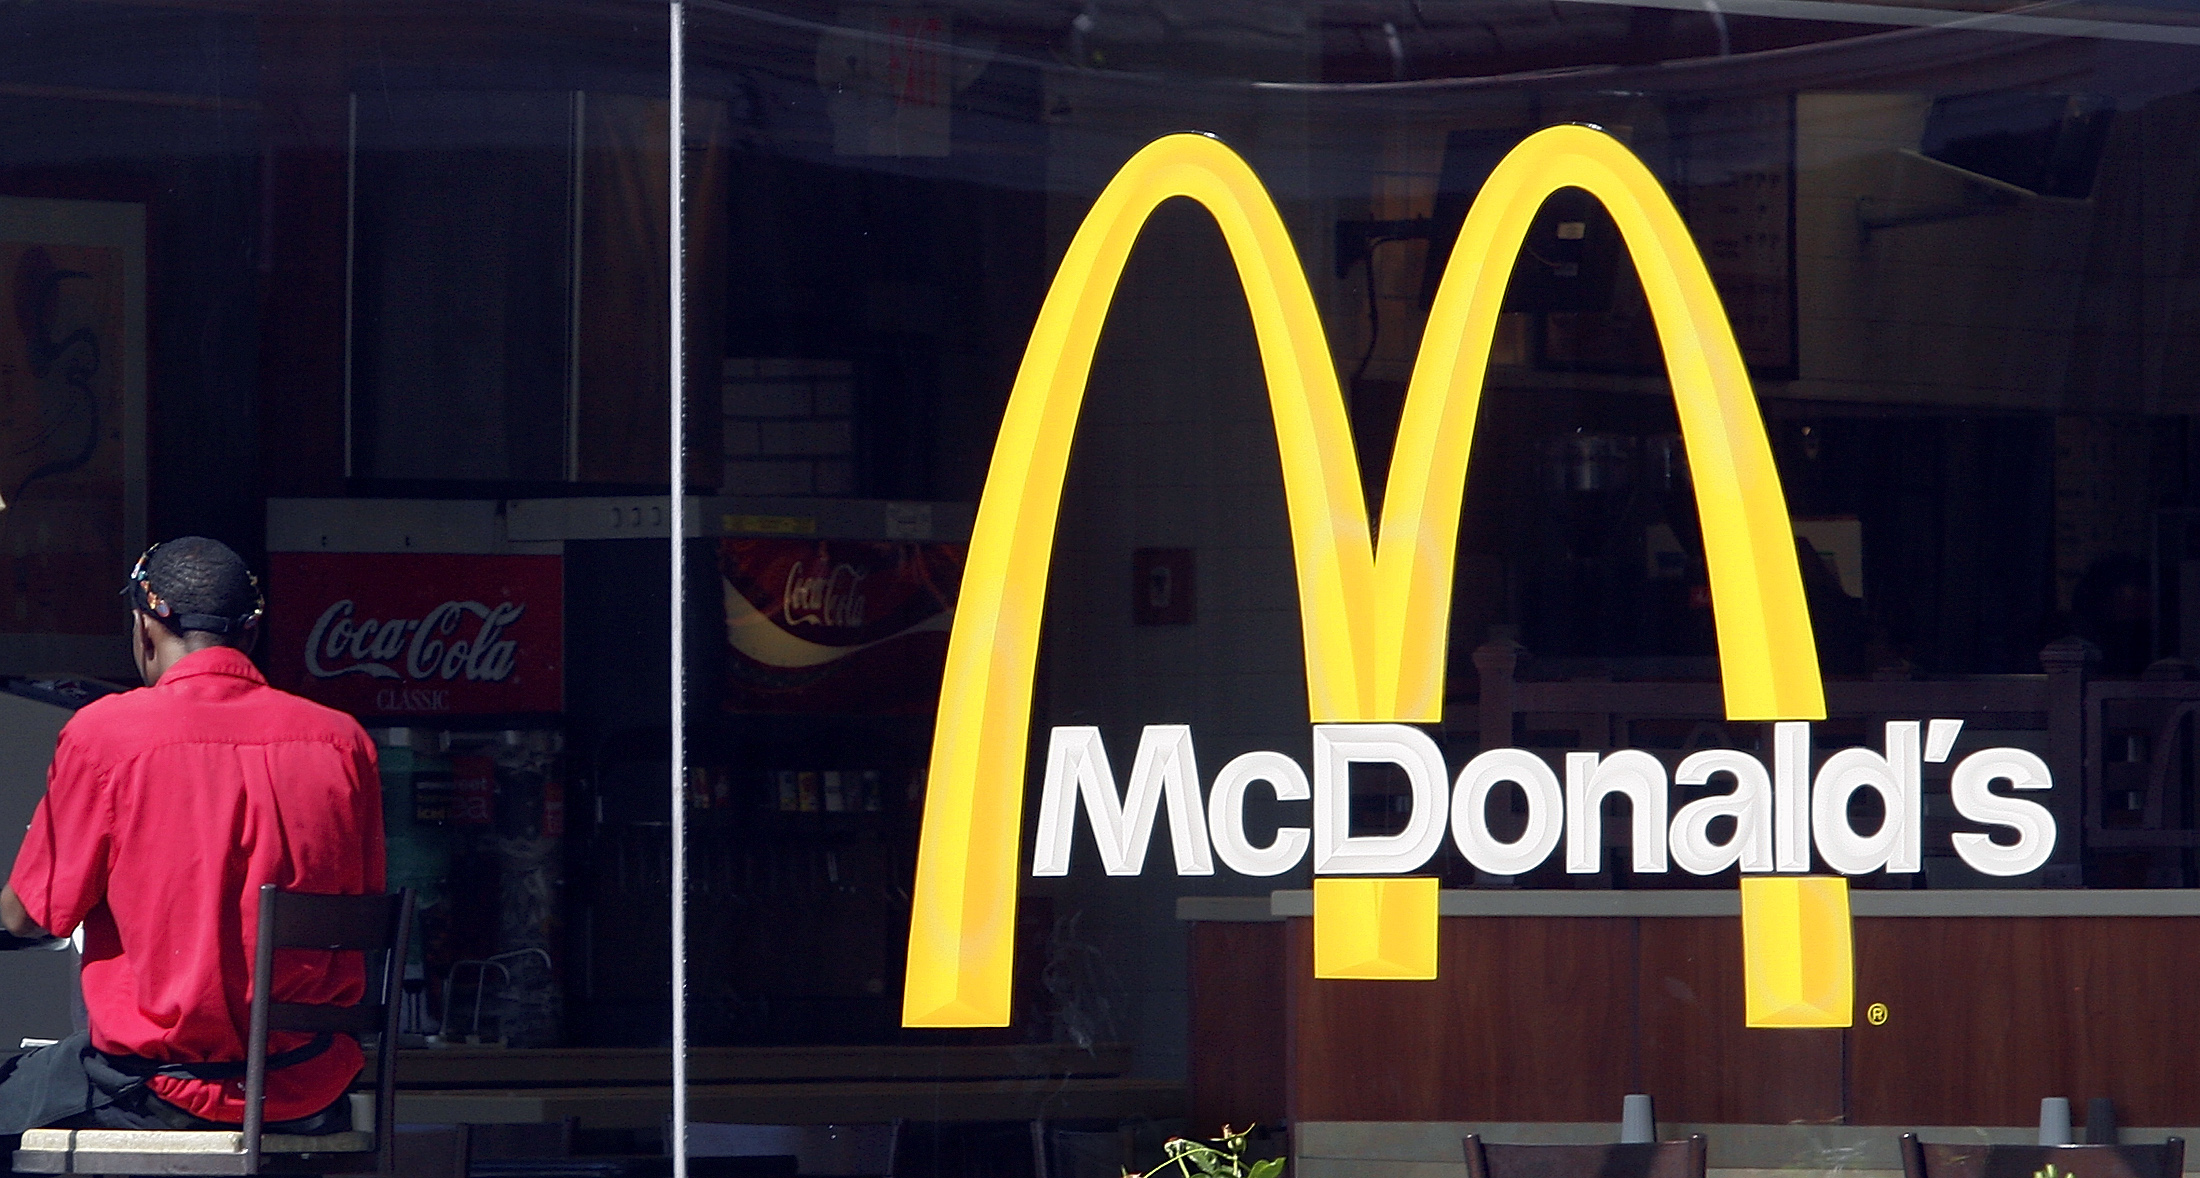 "McDonalds i stolt samarbete med 1 000 svenska bönder”, står det i reklamfilmen. Det hamburgerkedjan glömmer att nämna är att kampanjfilmen är inspelad i Tjeckien.